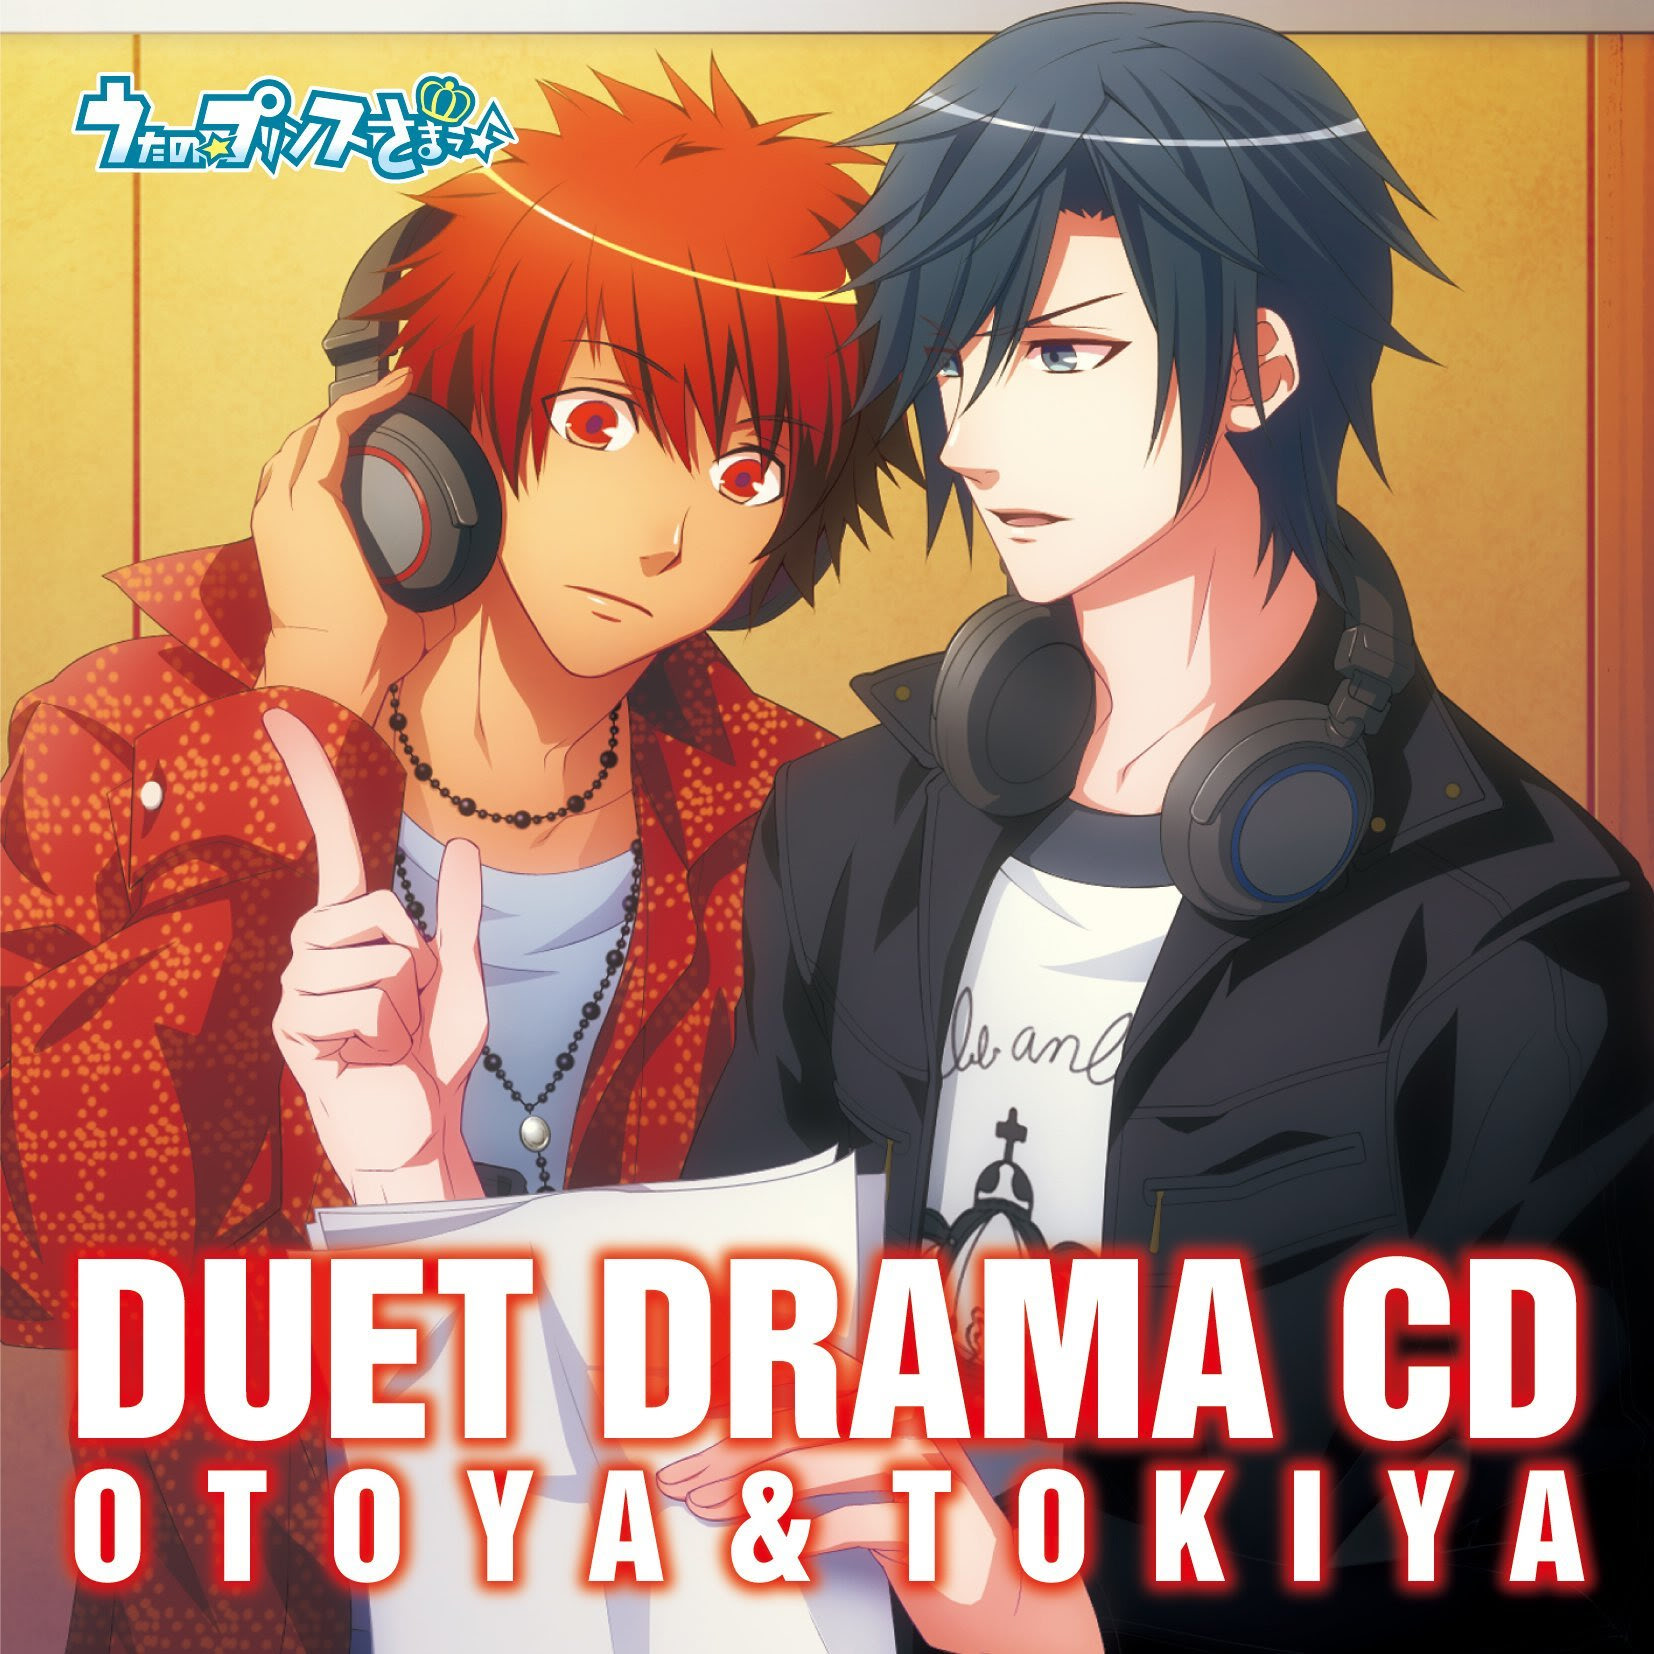 Duet Drama CD: Otoya & Tokiya | Uta no Prince-sama Wiki | FANDOM